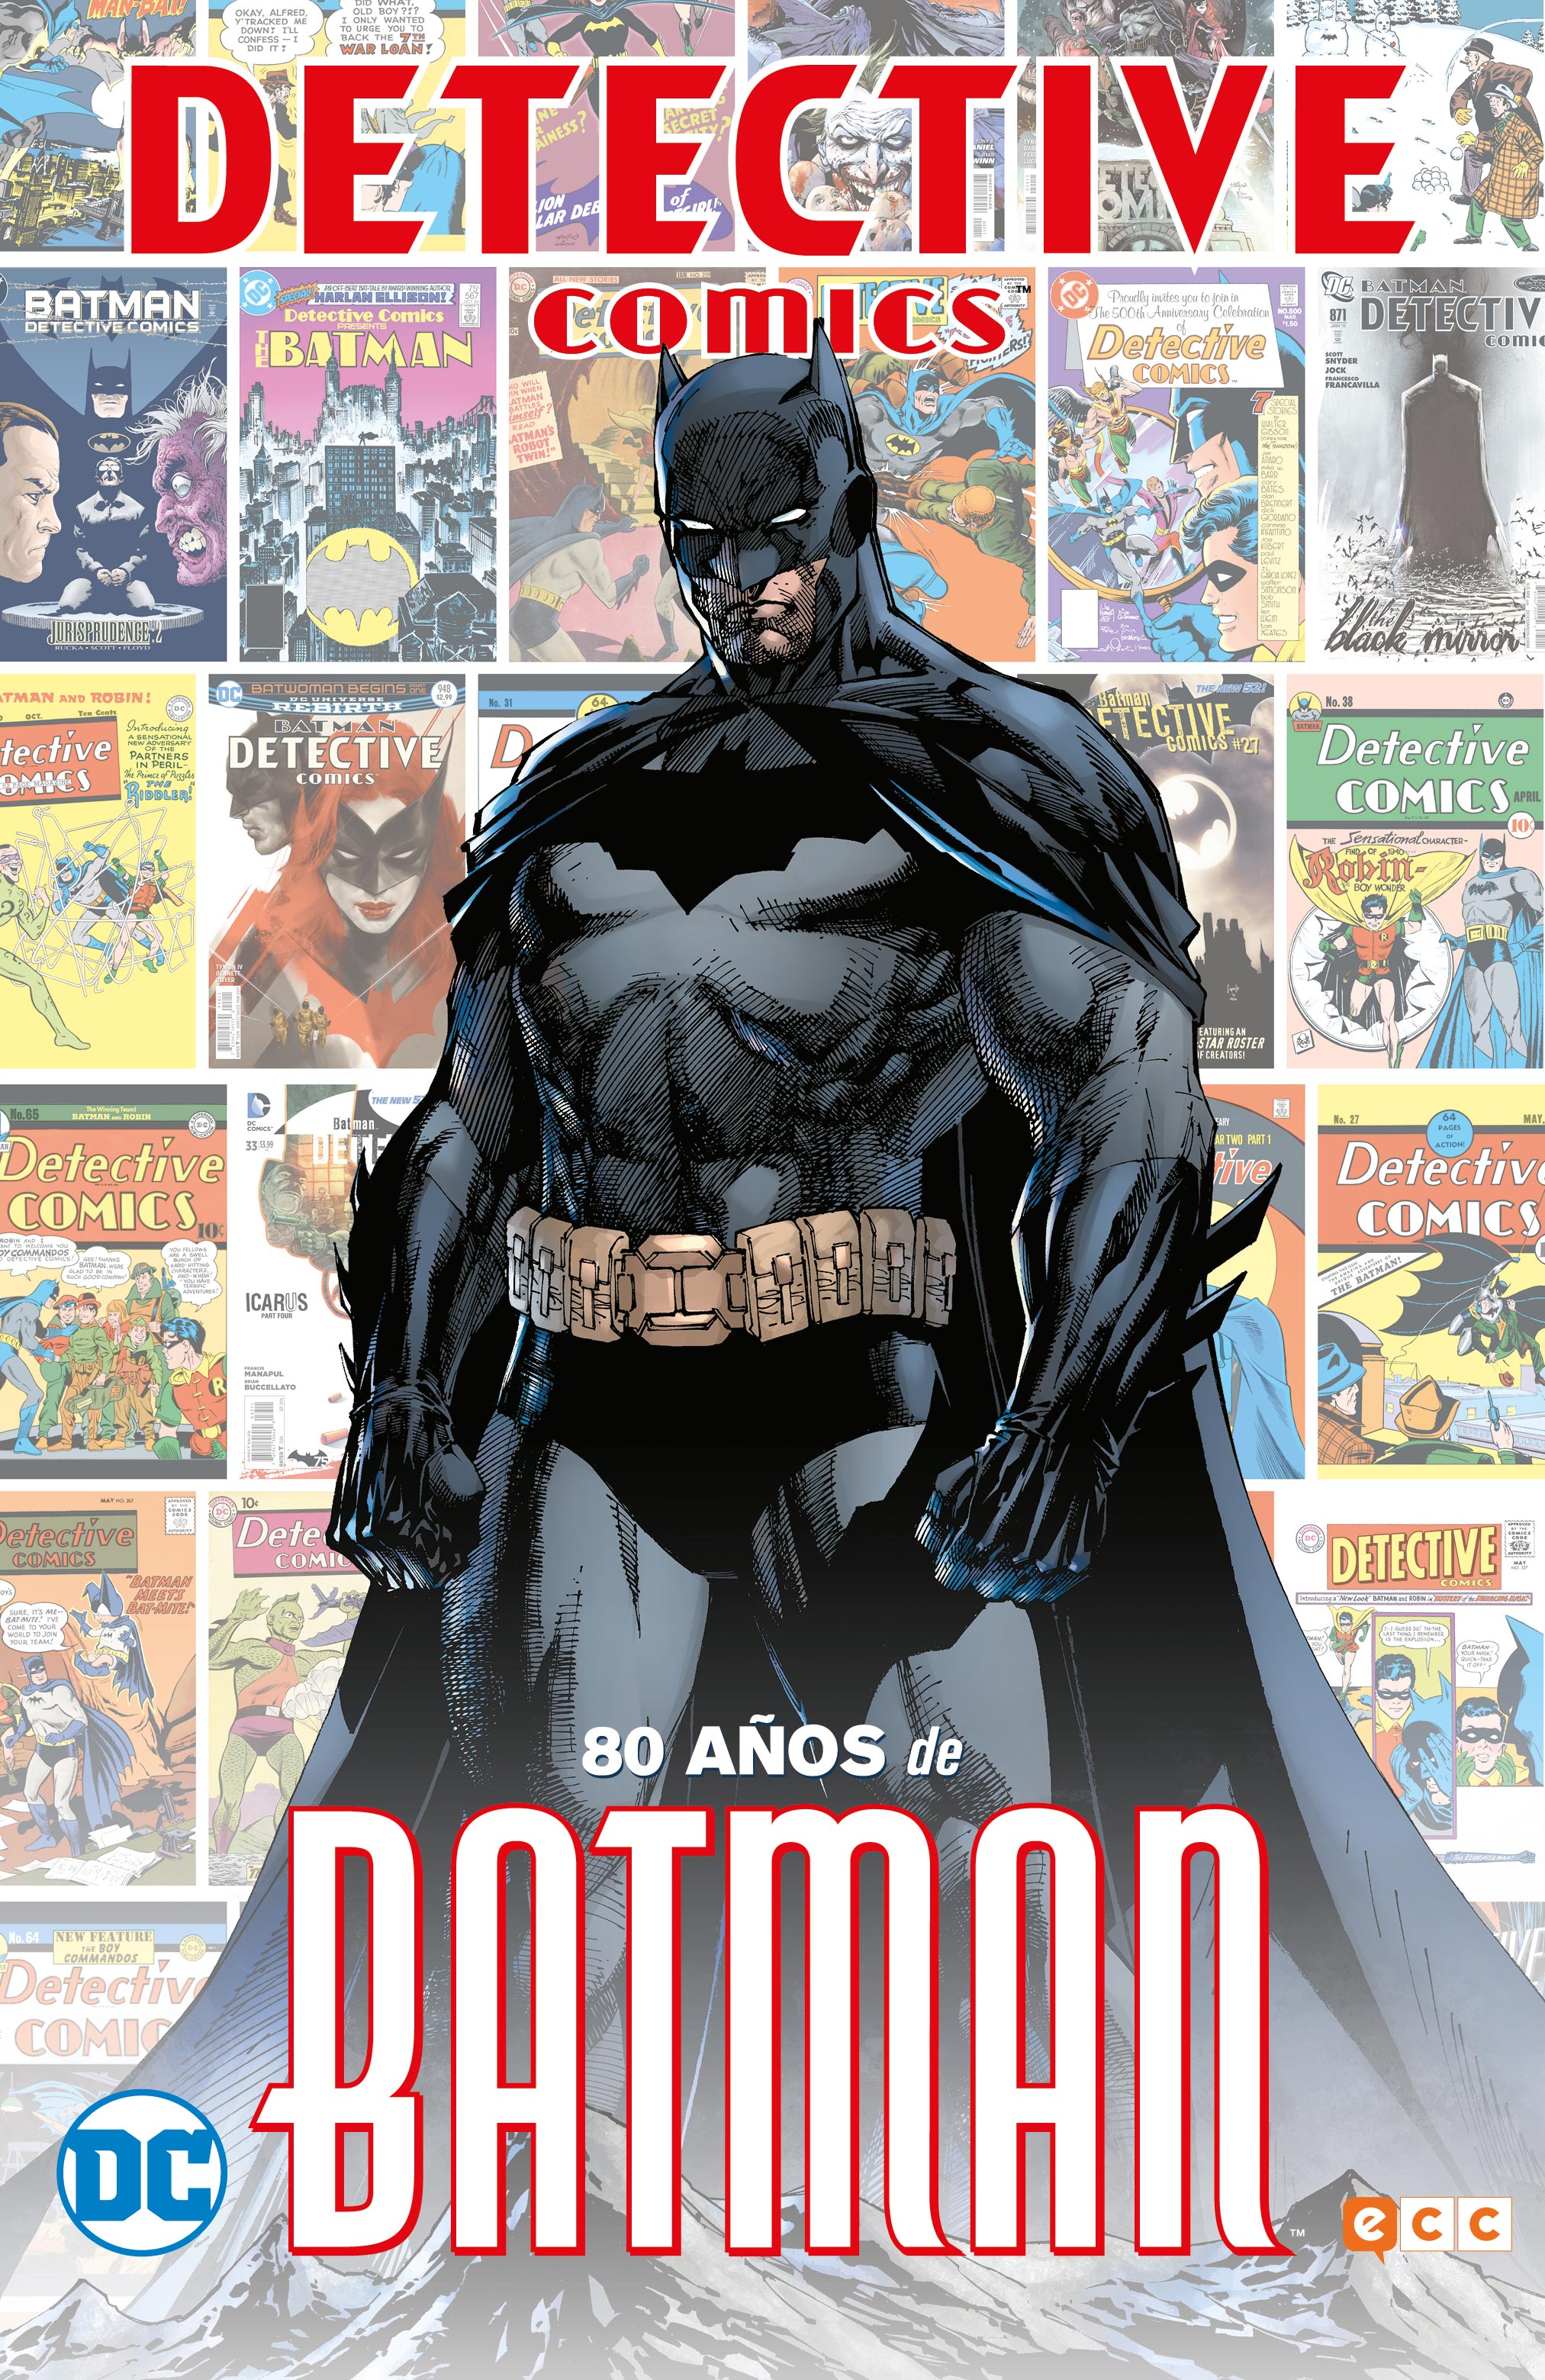 Detective Cómics: 80 años de Batman Edición Limitada.